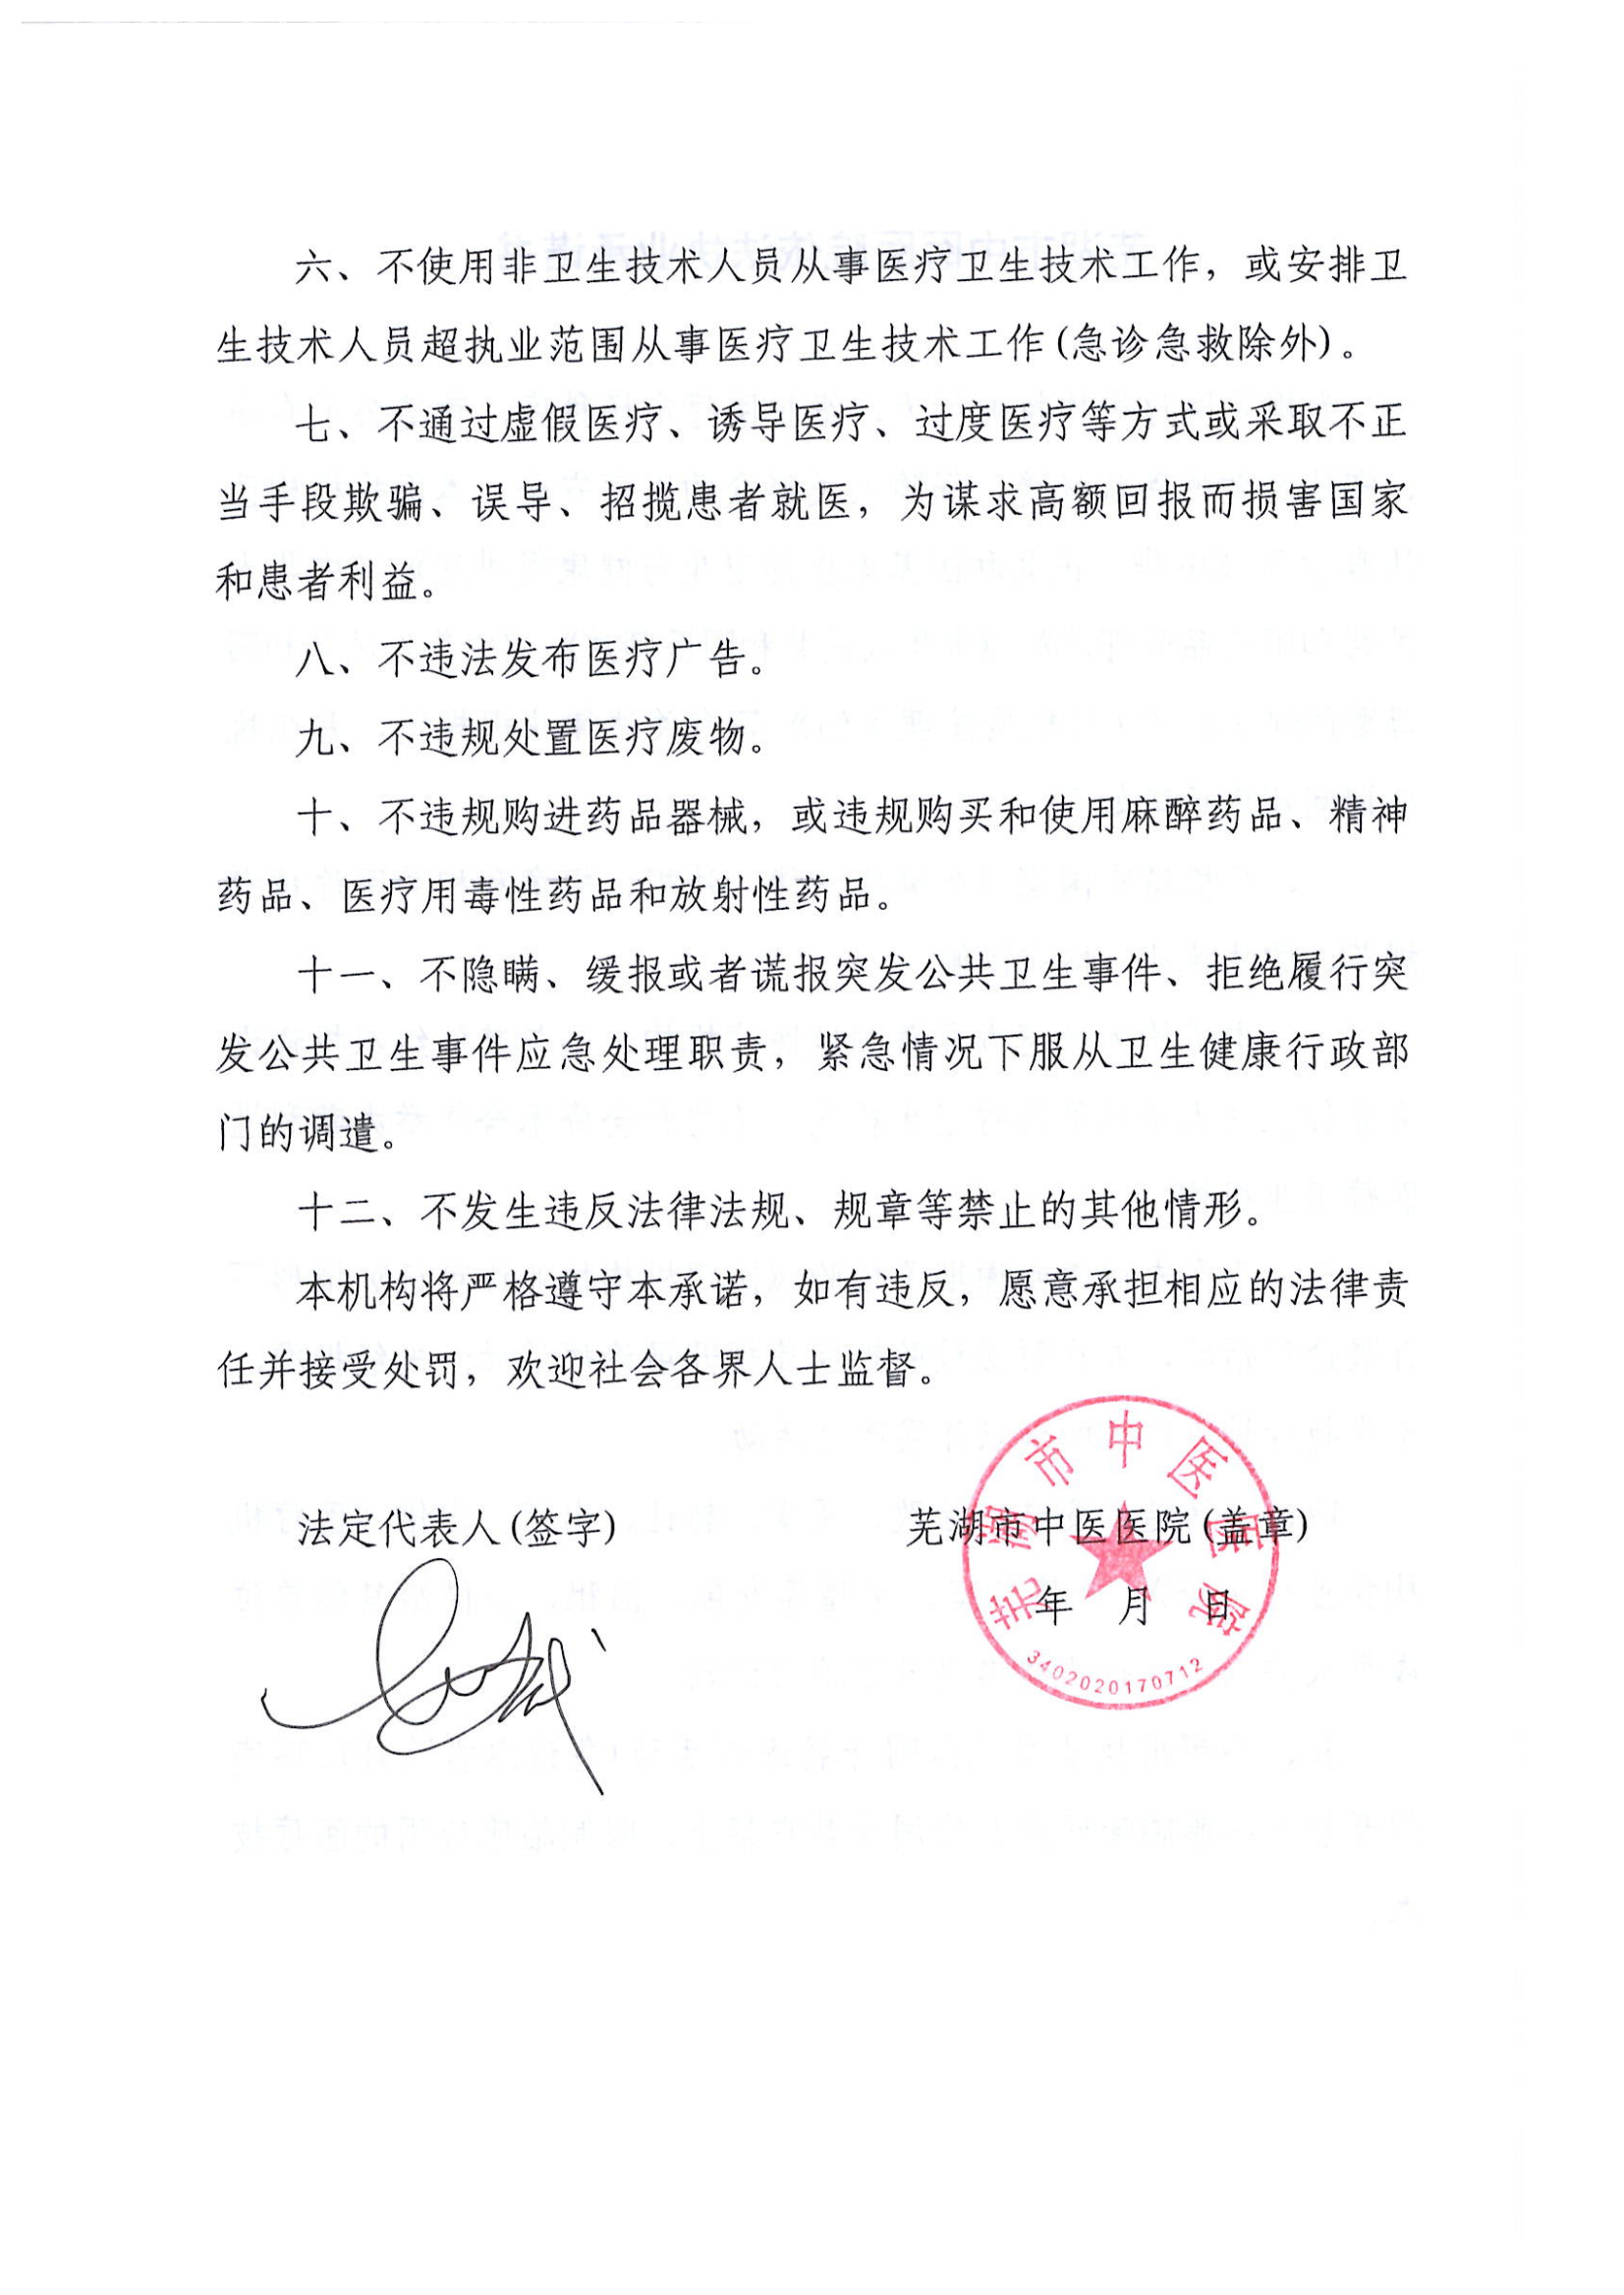 芜湖市中医医院依法执业承诺书 23.6.9 行风 依法_01.png